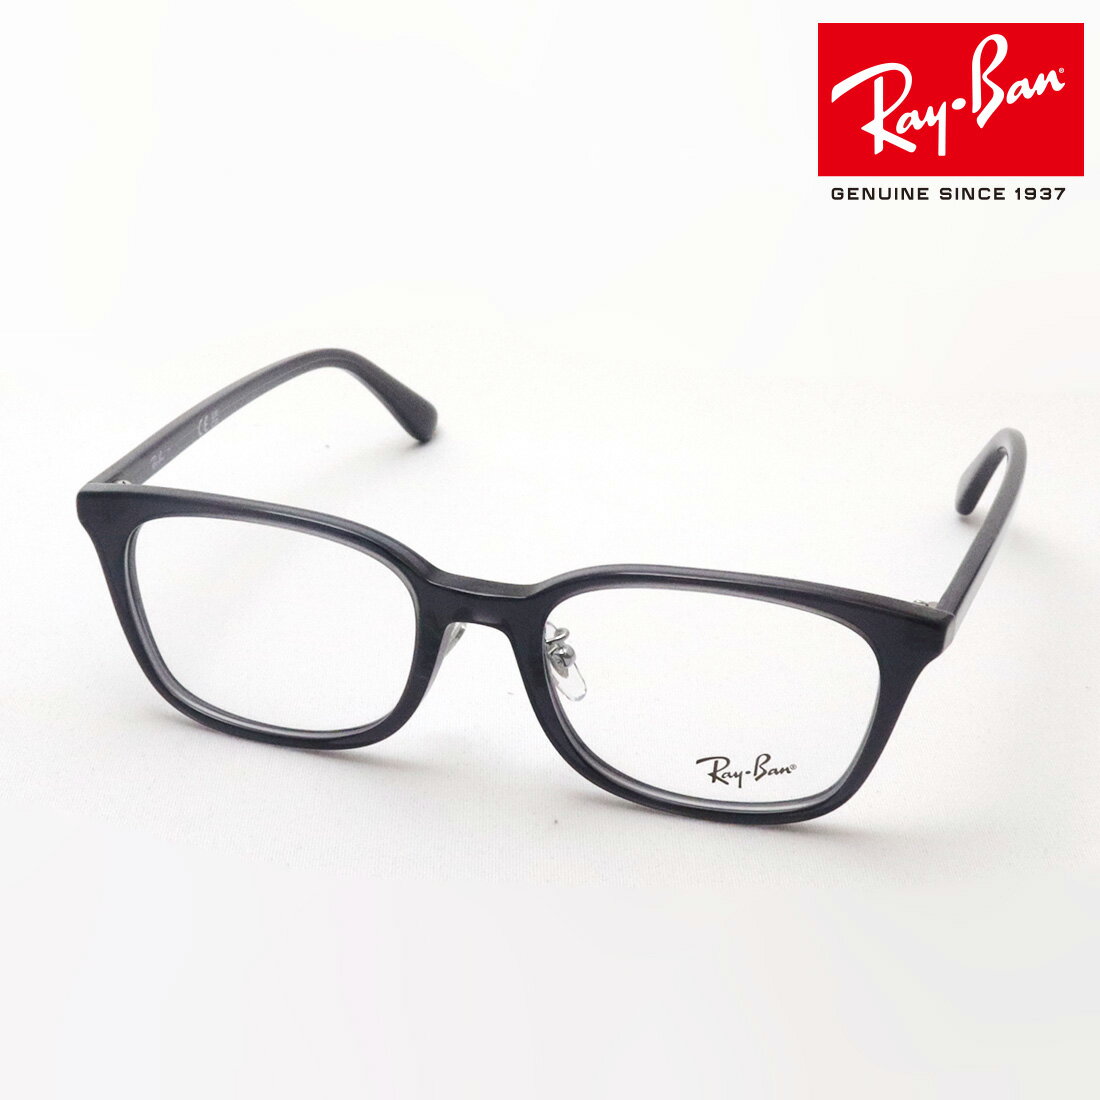 レイバン メガネ メンズ 正規レイバン日本最大級の品揃え レイバン メガネ フレーム Ray-Ban RX5407D 5920 伊達メガネ 度付き ブルーライト カット 眼鏡 RayBan スクエア グレー系